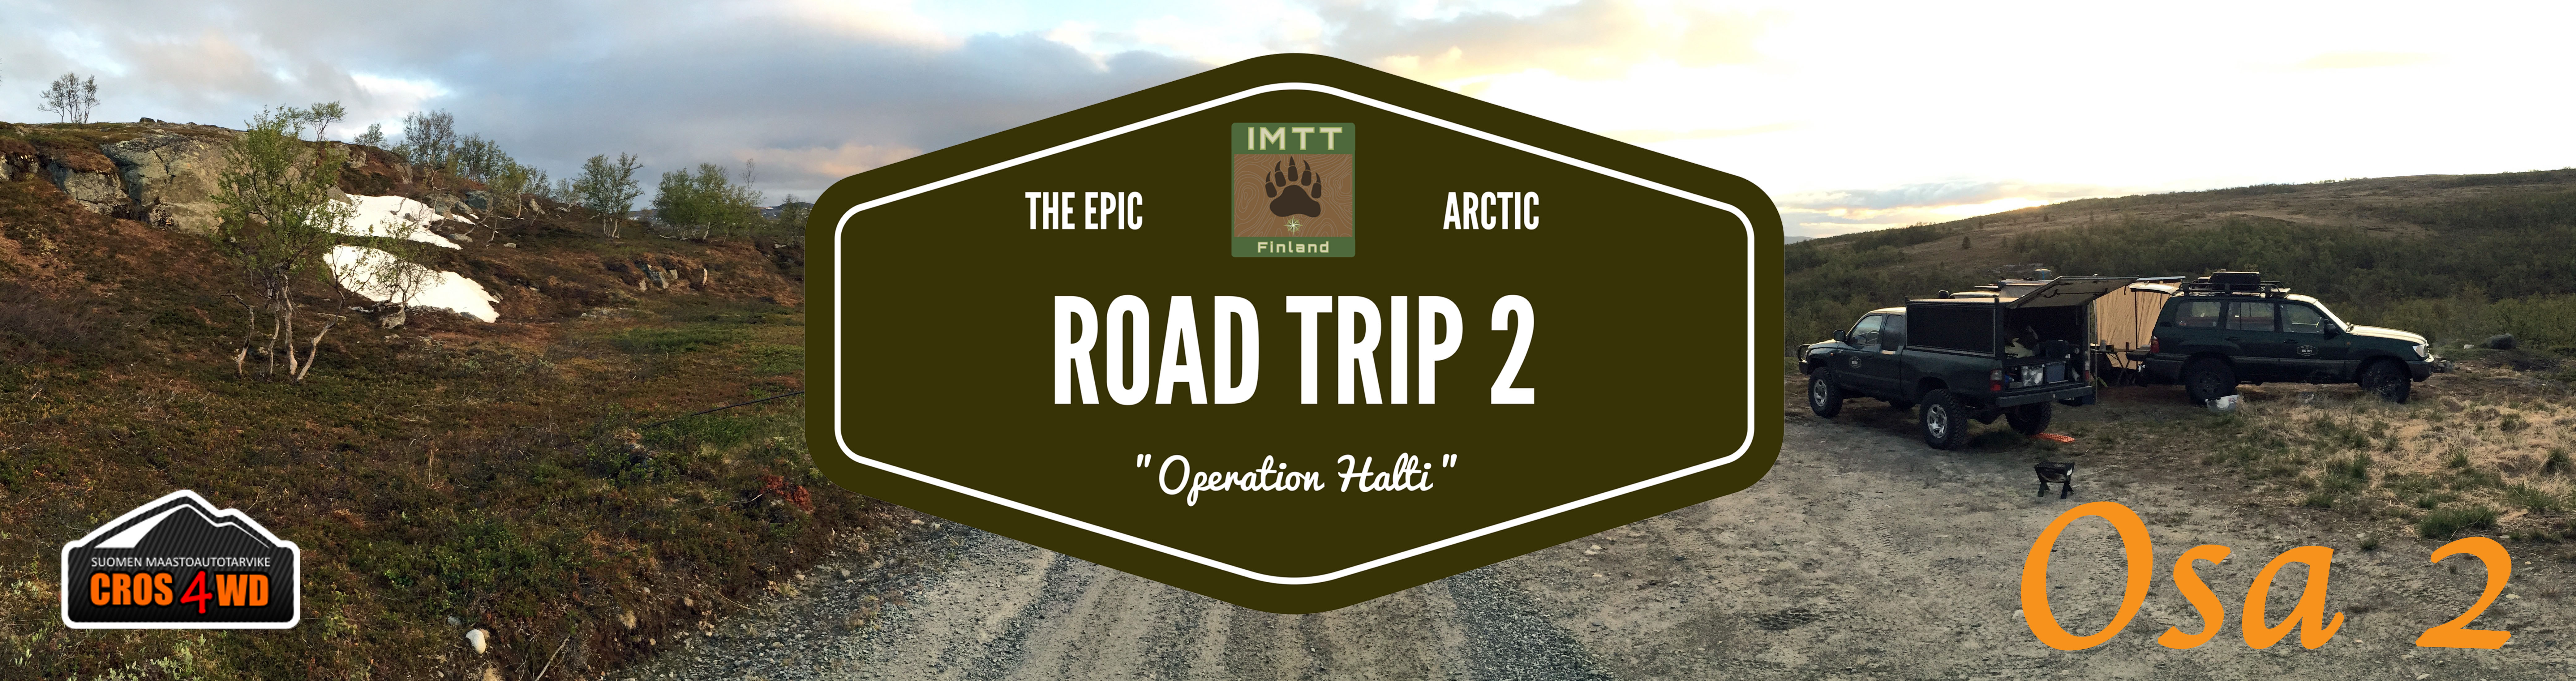 Arctic Road Trip 2 – osa 2